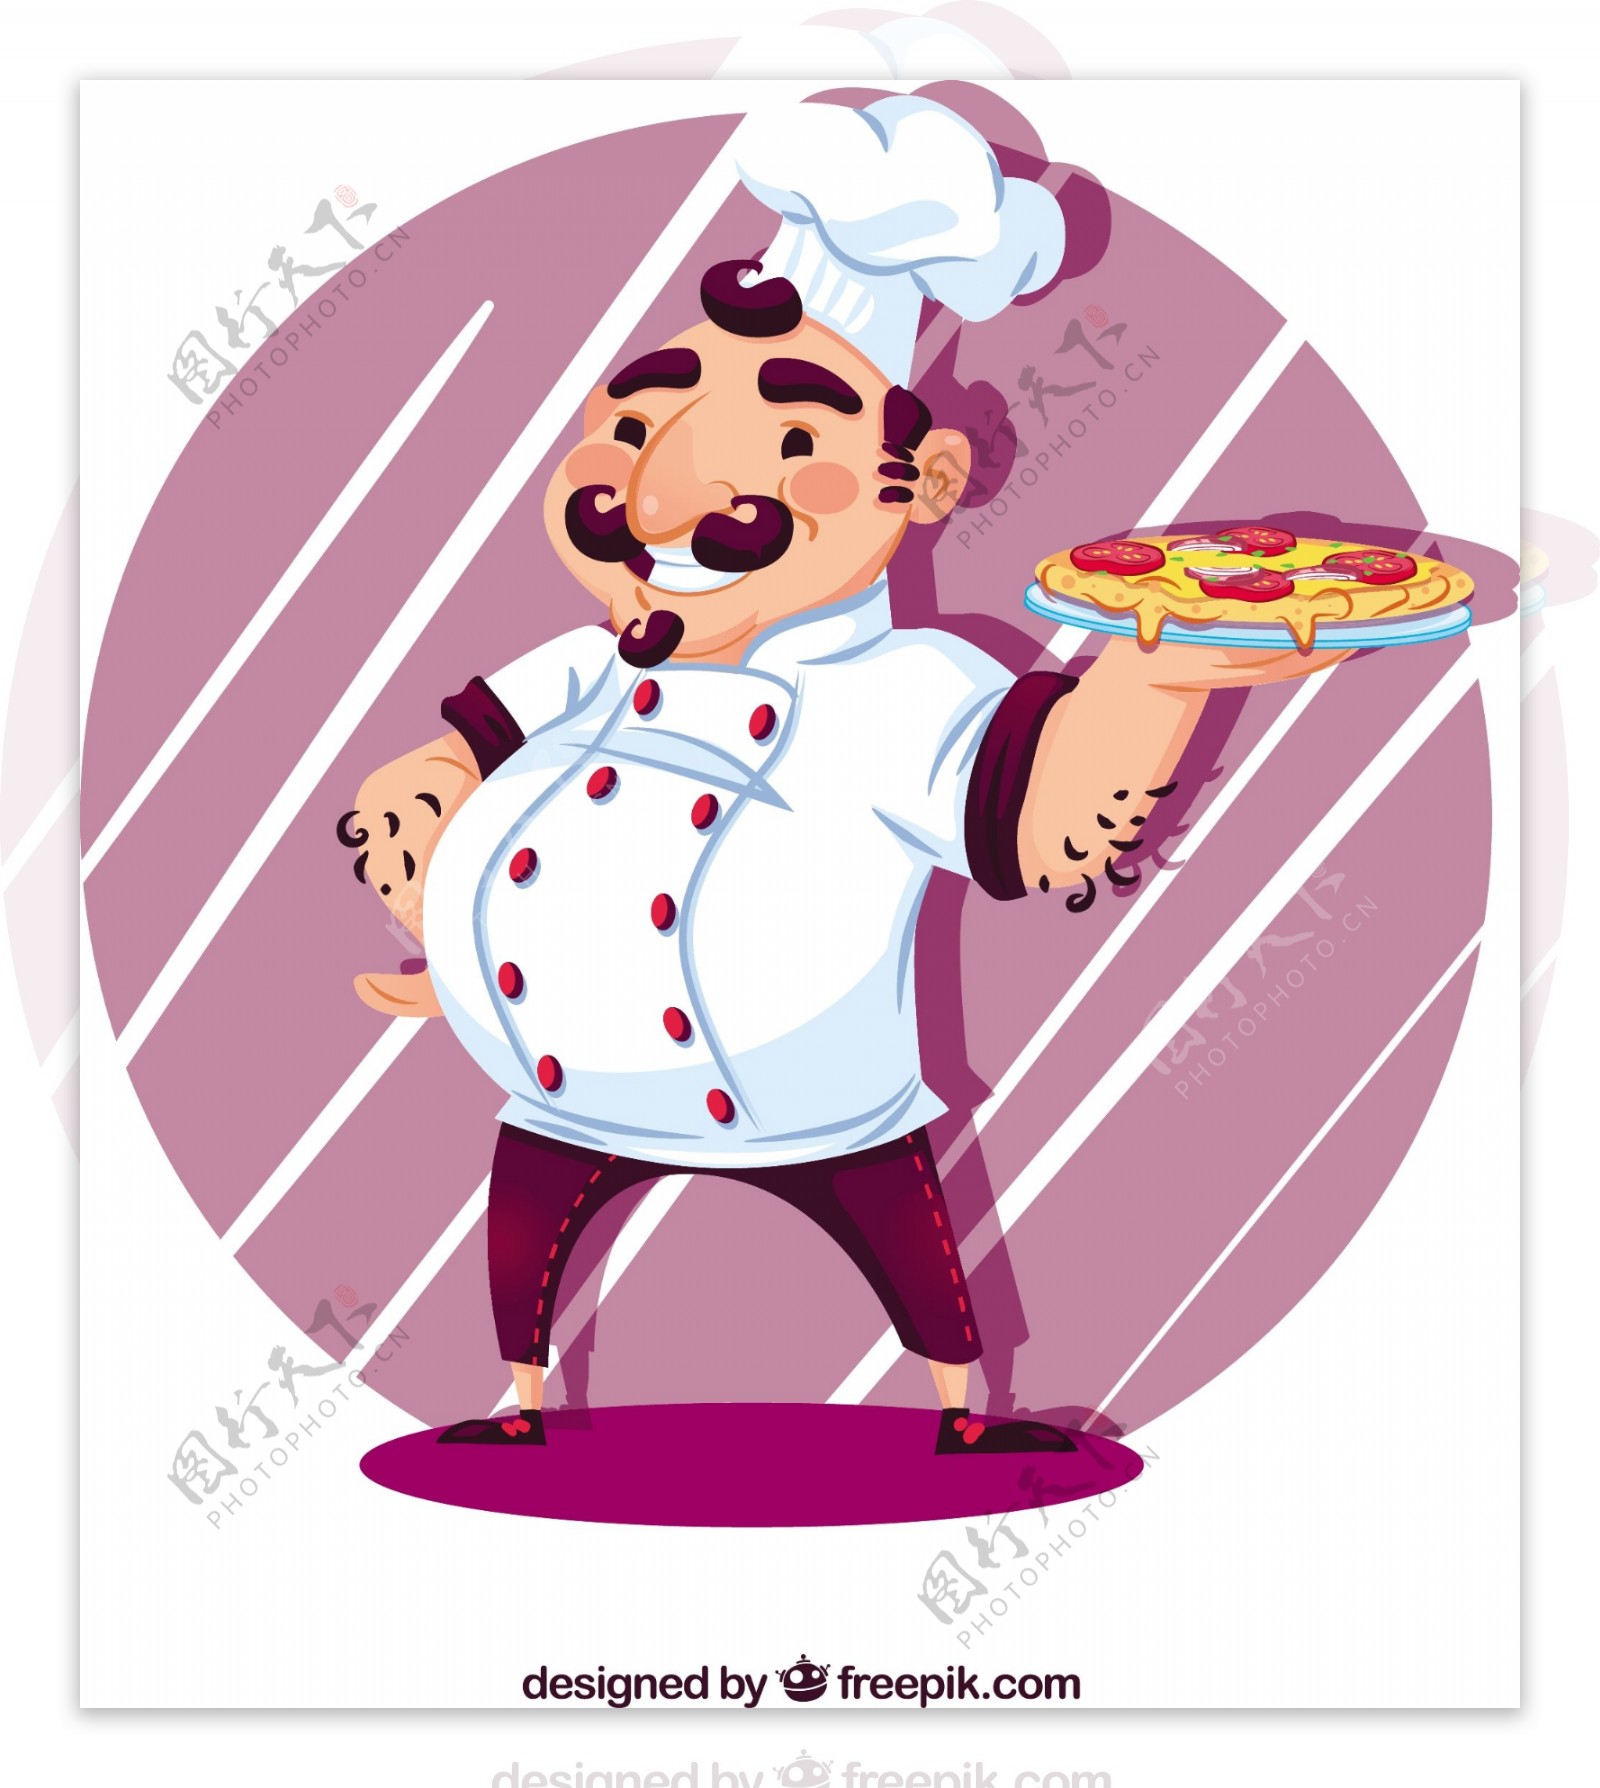 意大利厨师与比萨饼紫色圆形背景